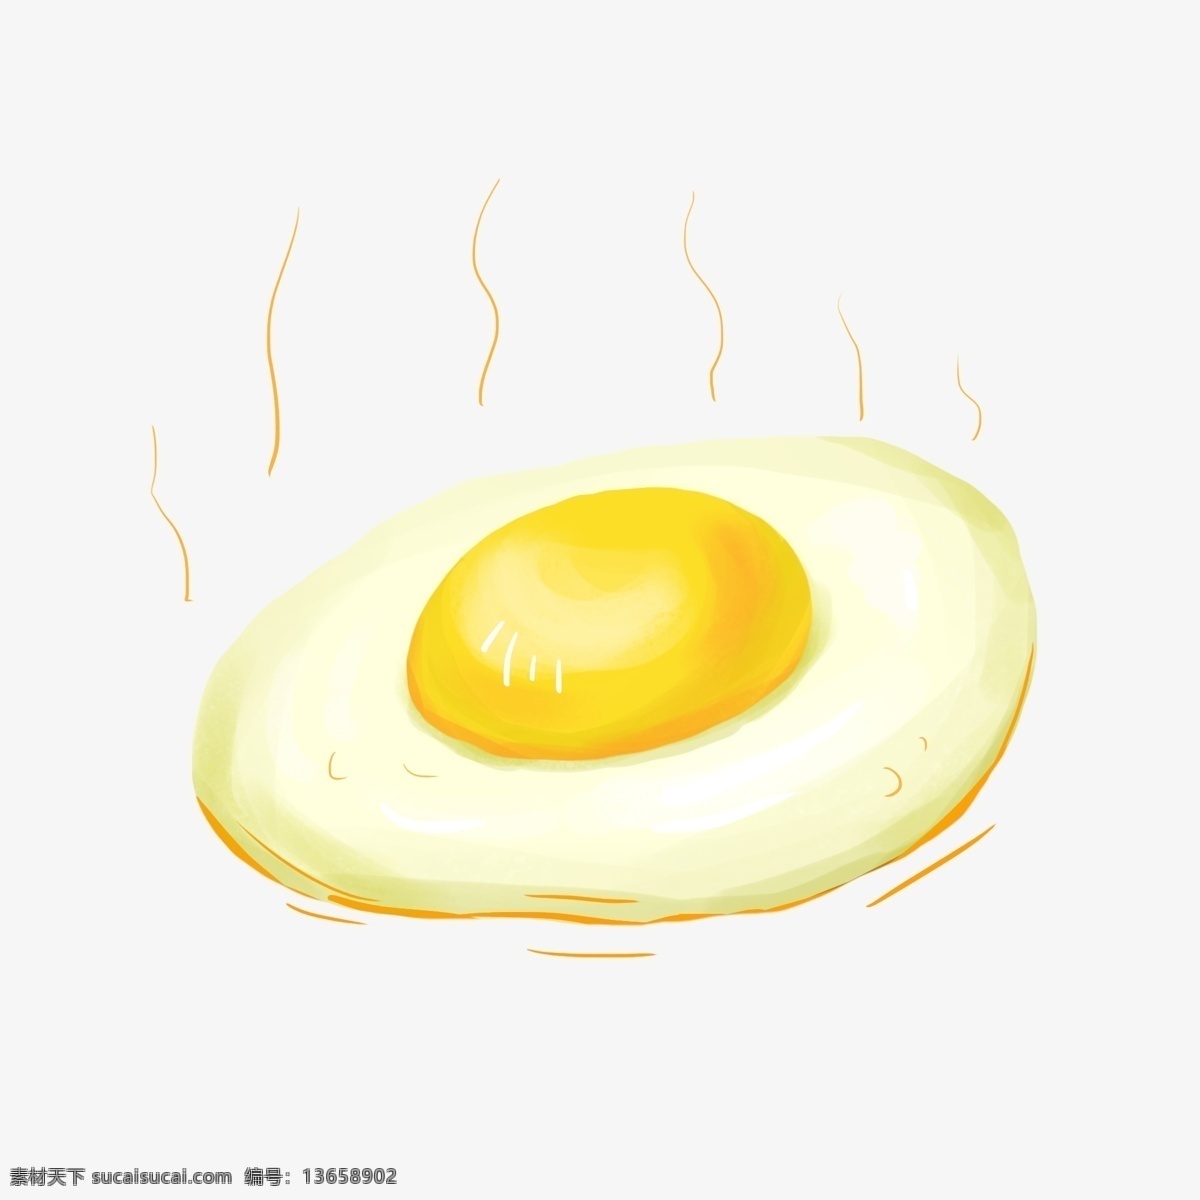 简约 手绘 煎蛋 插画 海报 免 抠 元素 食物 美食 鸡蛋 可爱 卡通 插画用图 海报用图 黄色 白色 小清新